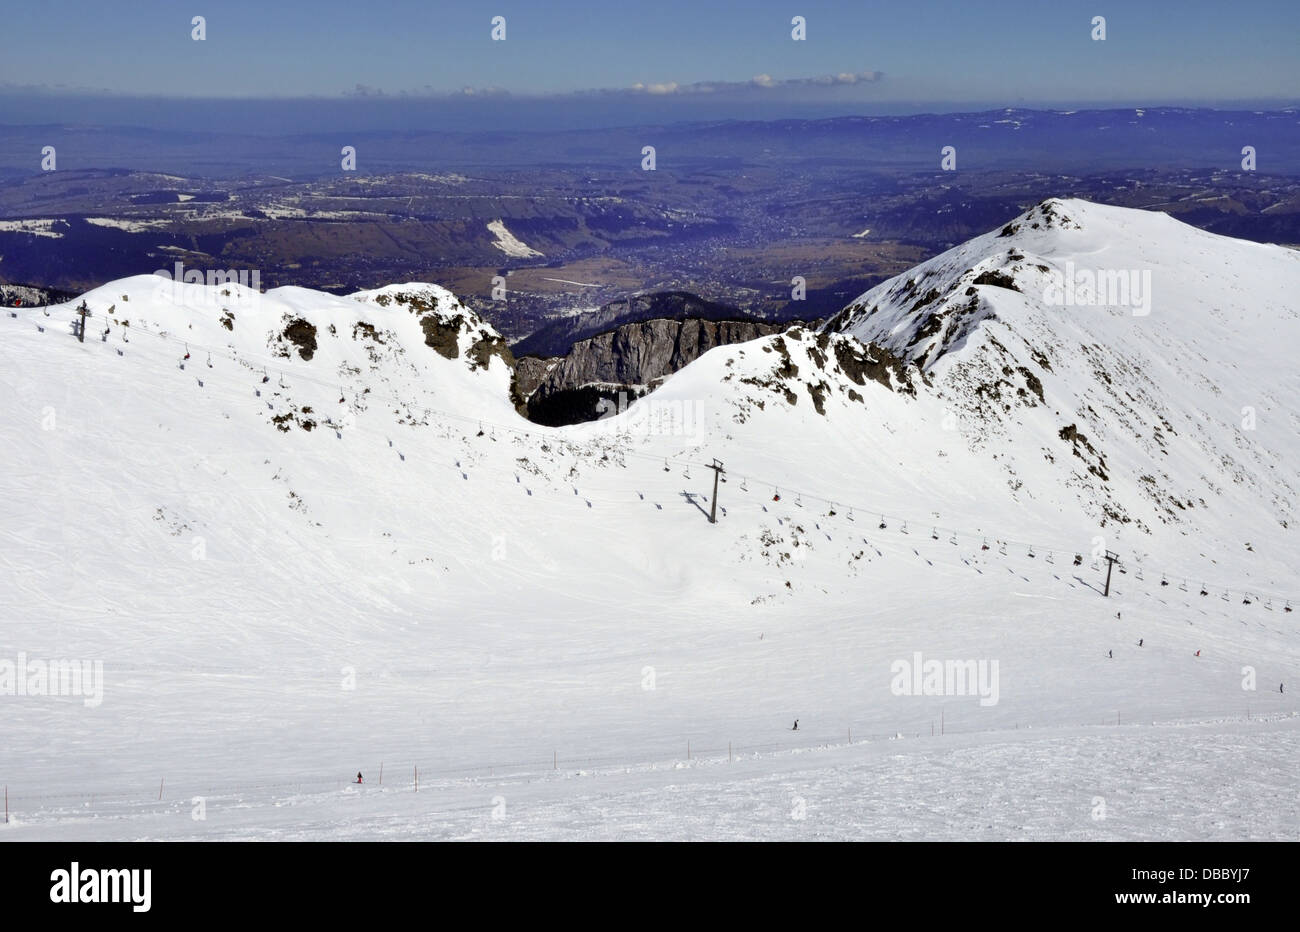 Skipisten und Sessellift auf Hala Gasienicowa im Tatra-Gebirge in Polen mit dem Blick auf Skigebiet Zakopane und Podhale region Stockfoto